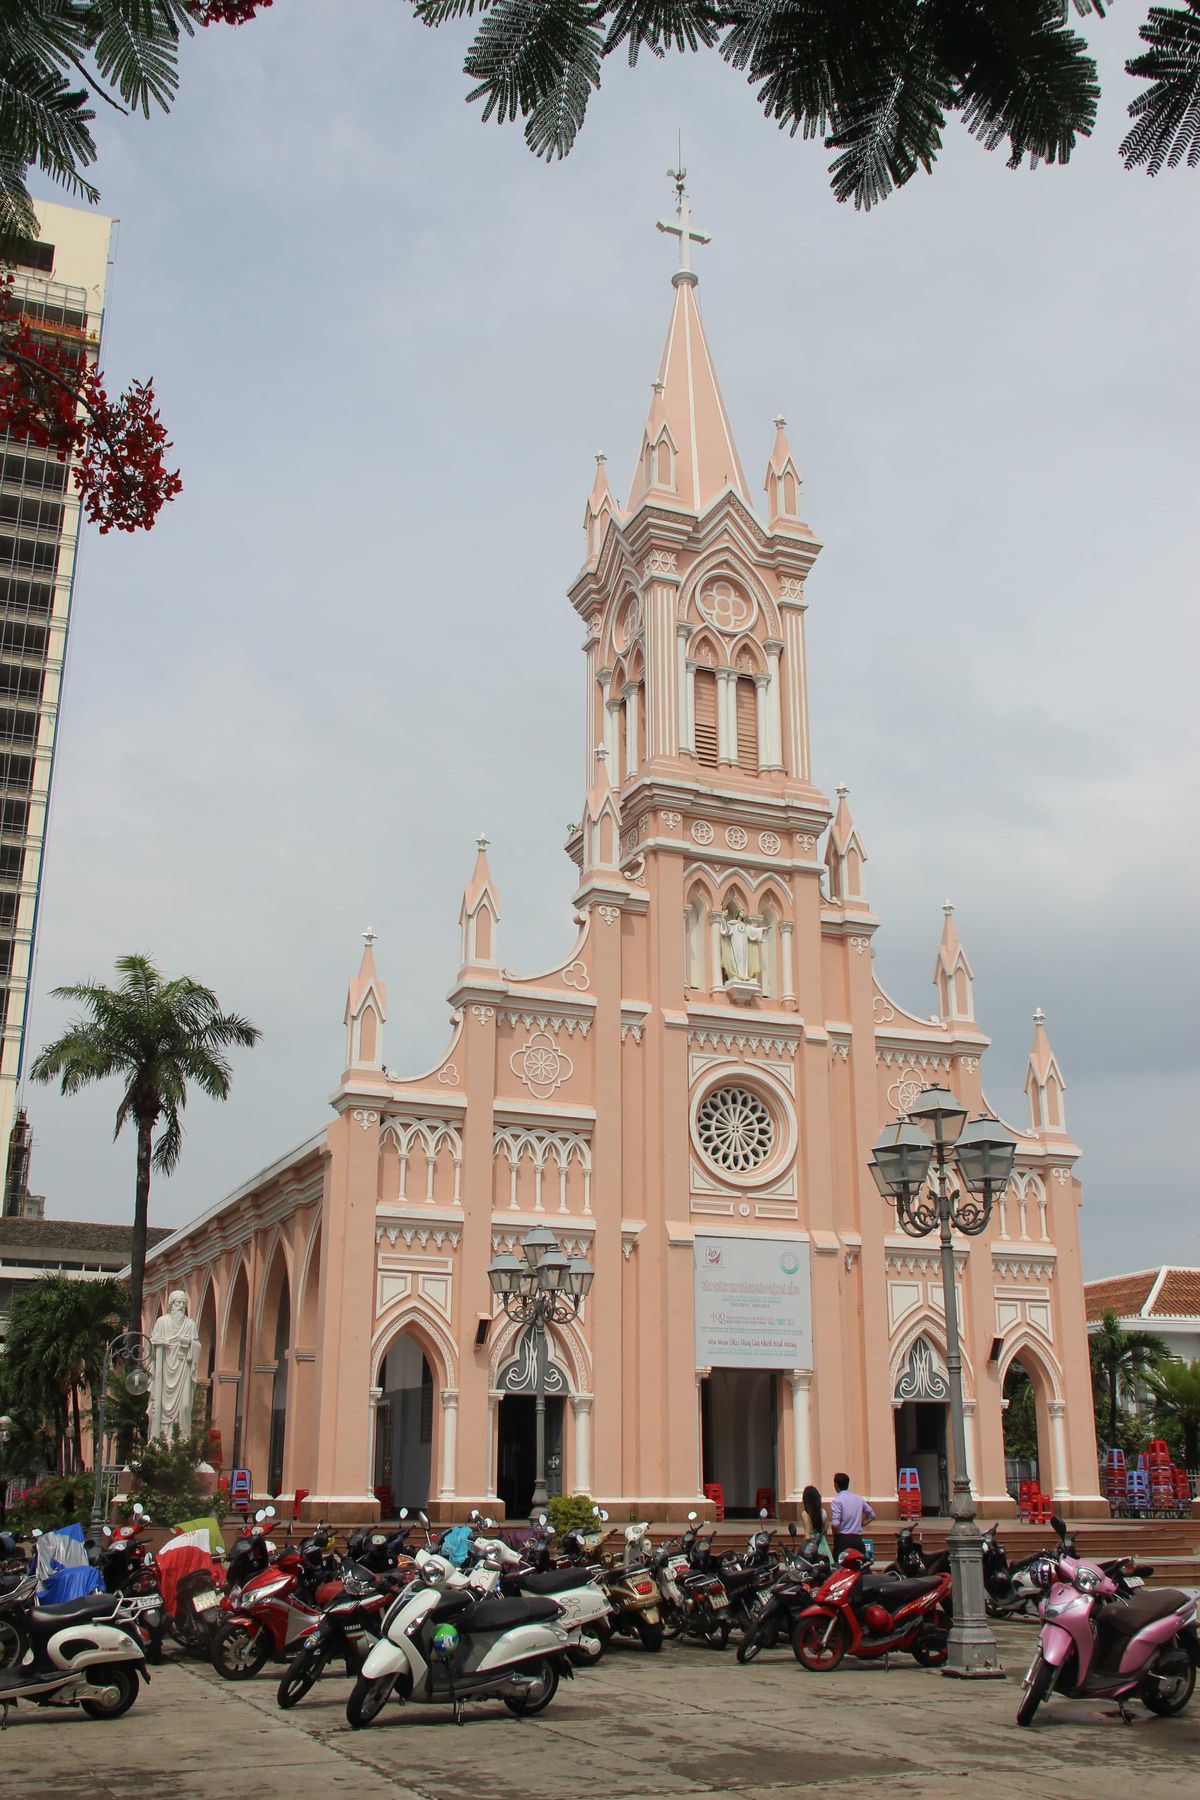 Đà Nẵng Cathedral (Vietnam) - Catholic Stock Photo